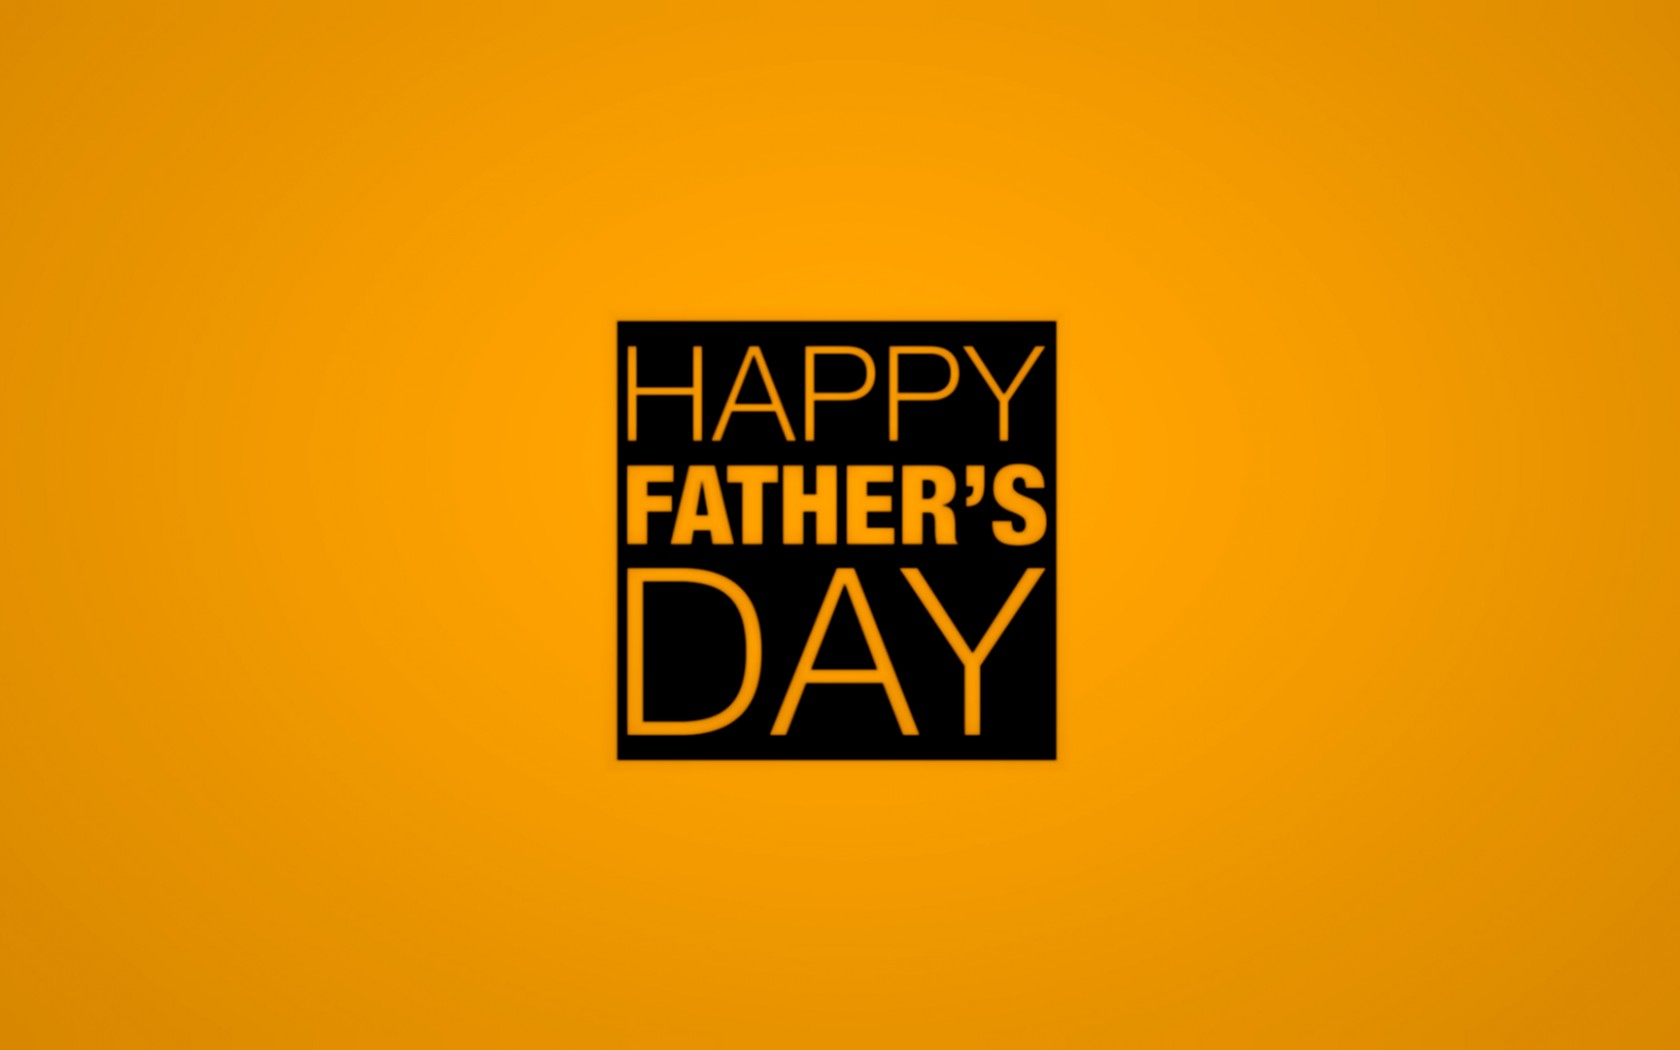 feliz dia del padre fondo de pantalla,fuente,texto,amarillo,naranja,gráficos